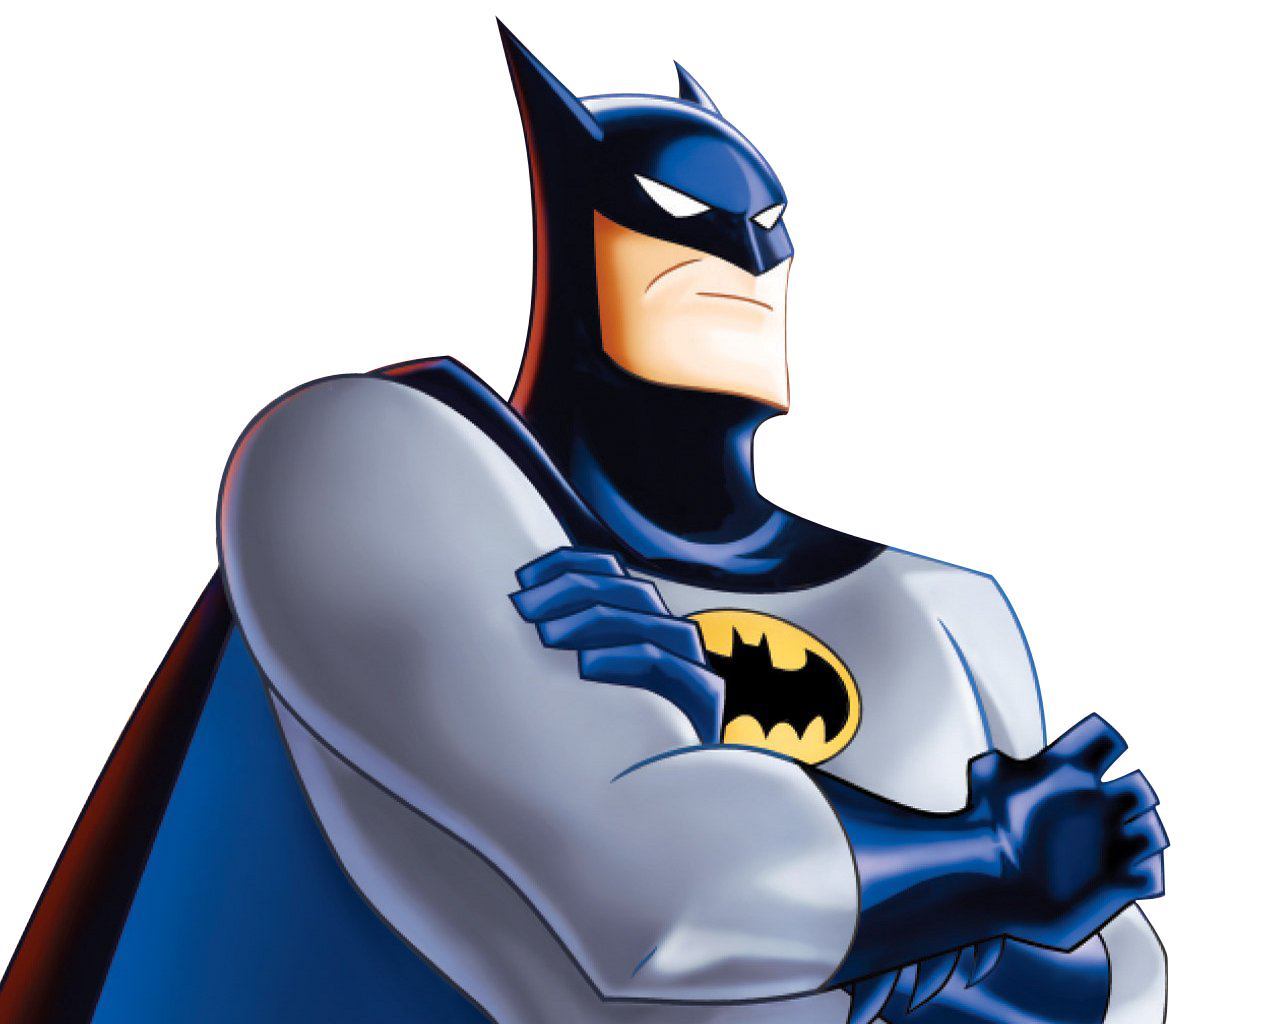 Batman PNG Images - Cartoon Batman, Batman Mask, Characters - Free  Transparent PNG Logos